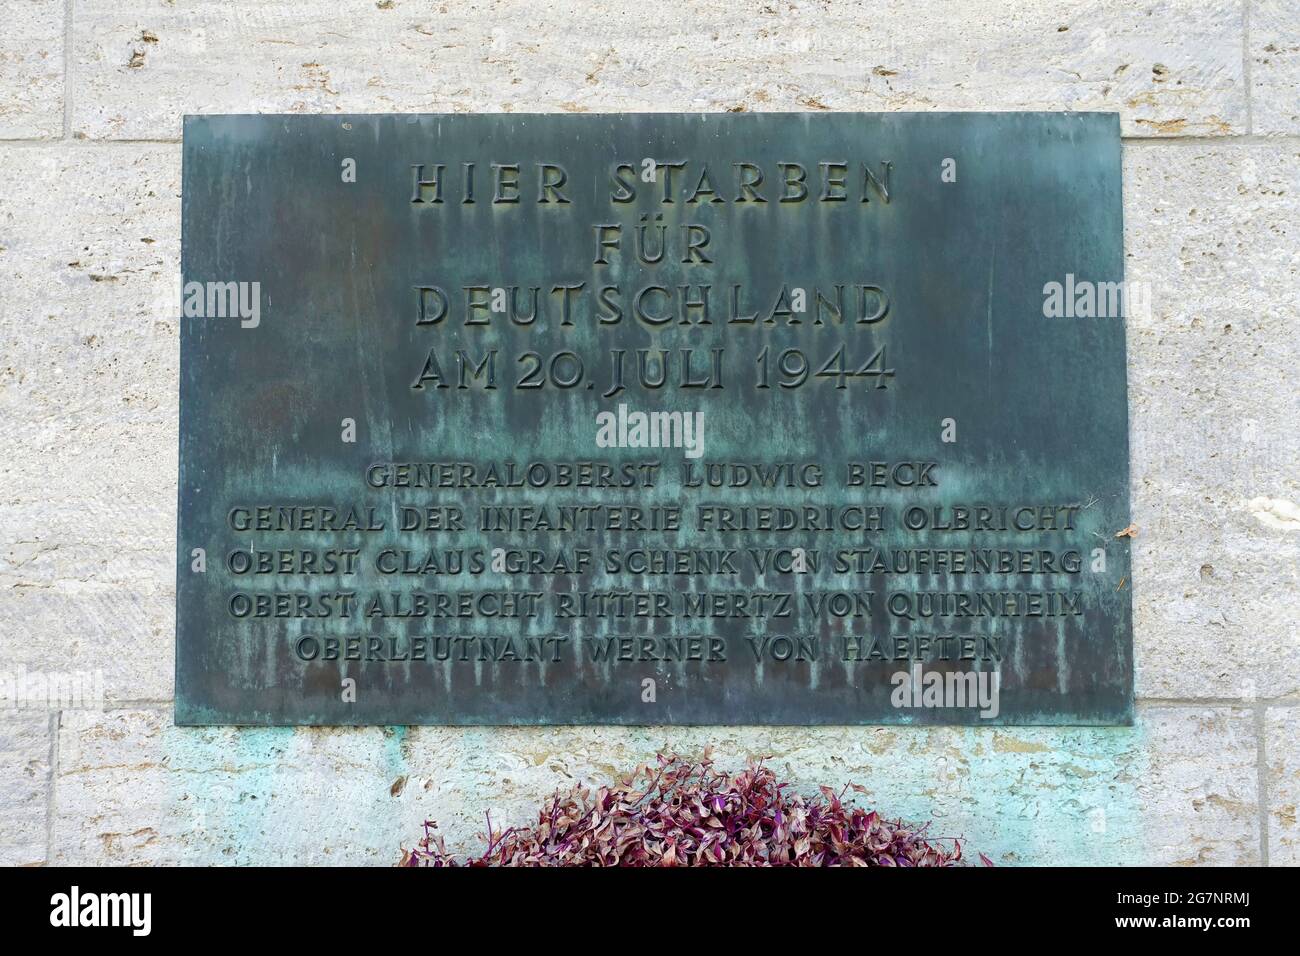 Memorial to the German Resistance, Bendlerblock, Berlin, Germany Stock Photo